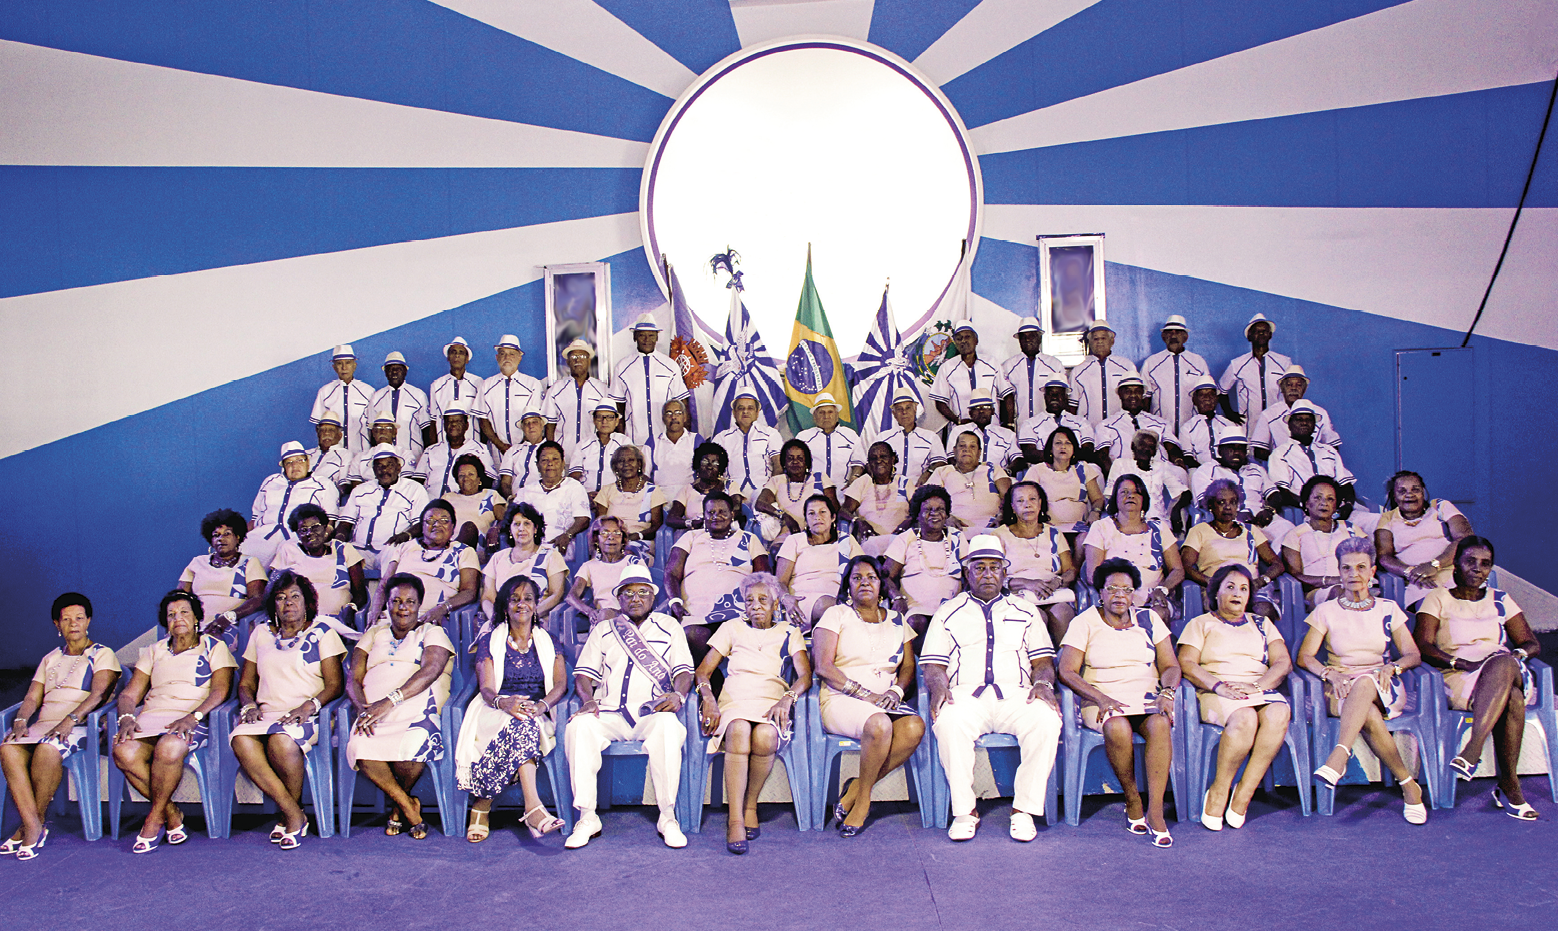 Fotografia. Pessoas uniformizadas e sentadas em cadeiras azuis. As mulheres usam um vestido bege com detalhes azuis e os homens camisas brancas com detalhes azuis e chapéu branco. No fundo, duas bandeiras em tons de branco e azul e, entre elas, a bandeira do Brasil. Também ao fundo, há um círculo e listras azuis e brancas radiais, que partem da borda do círculo.